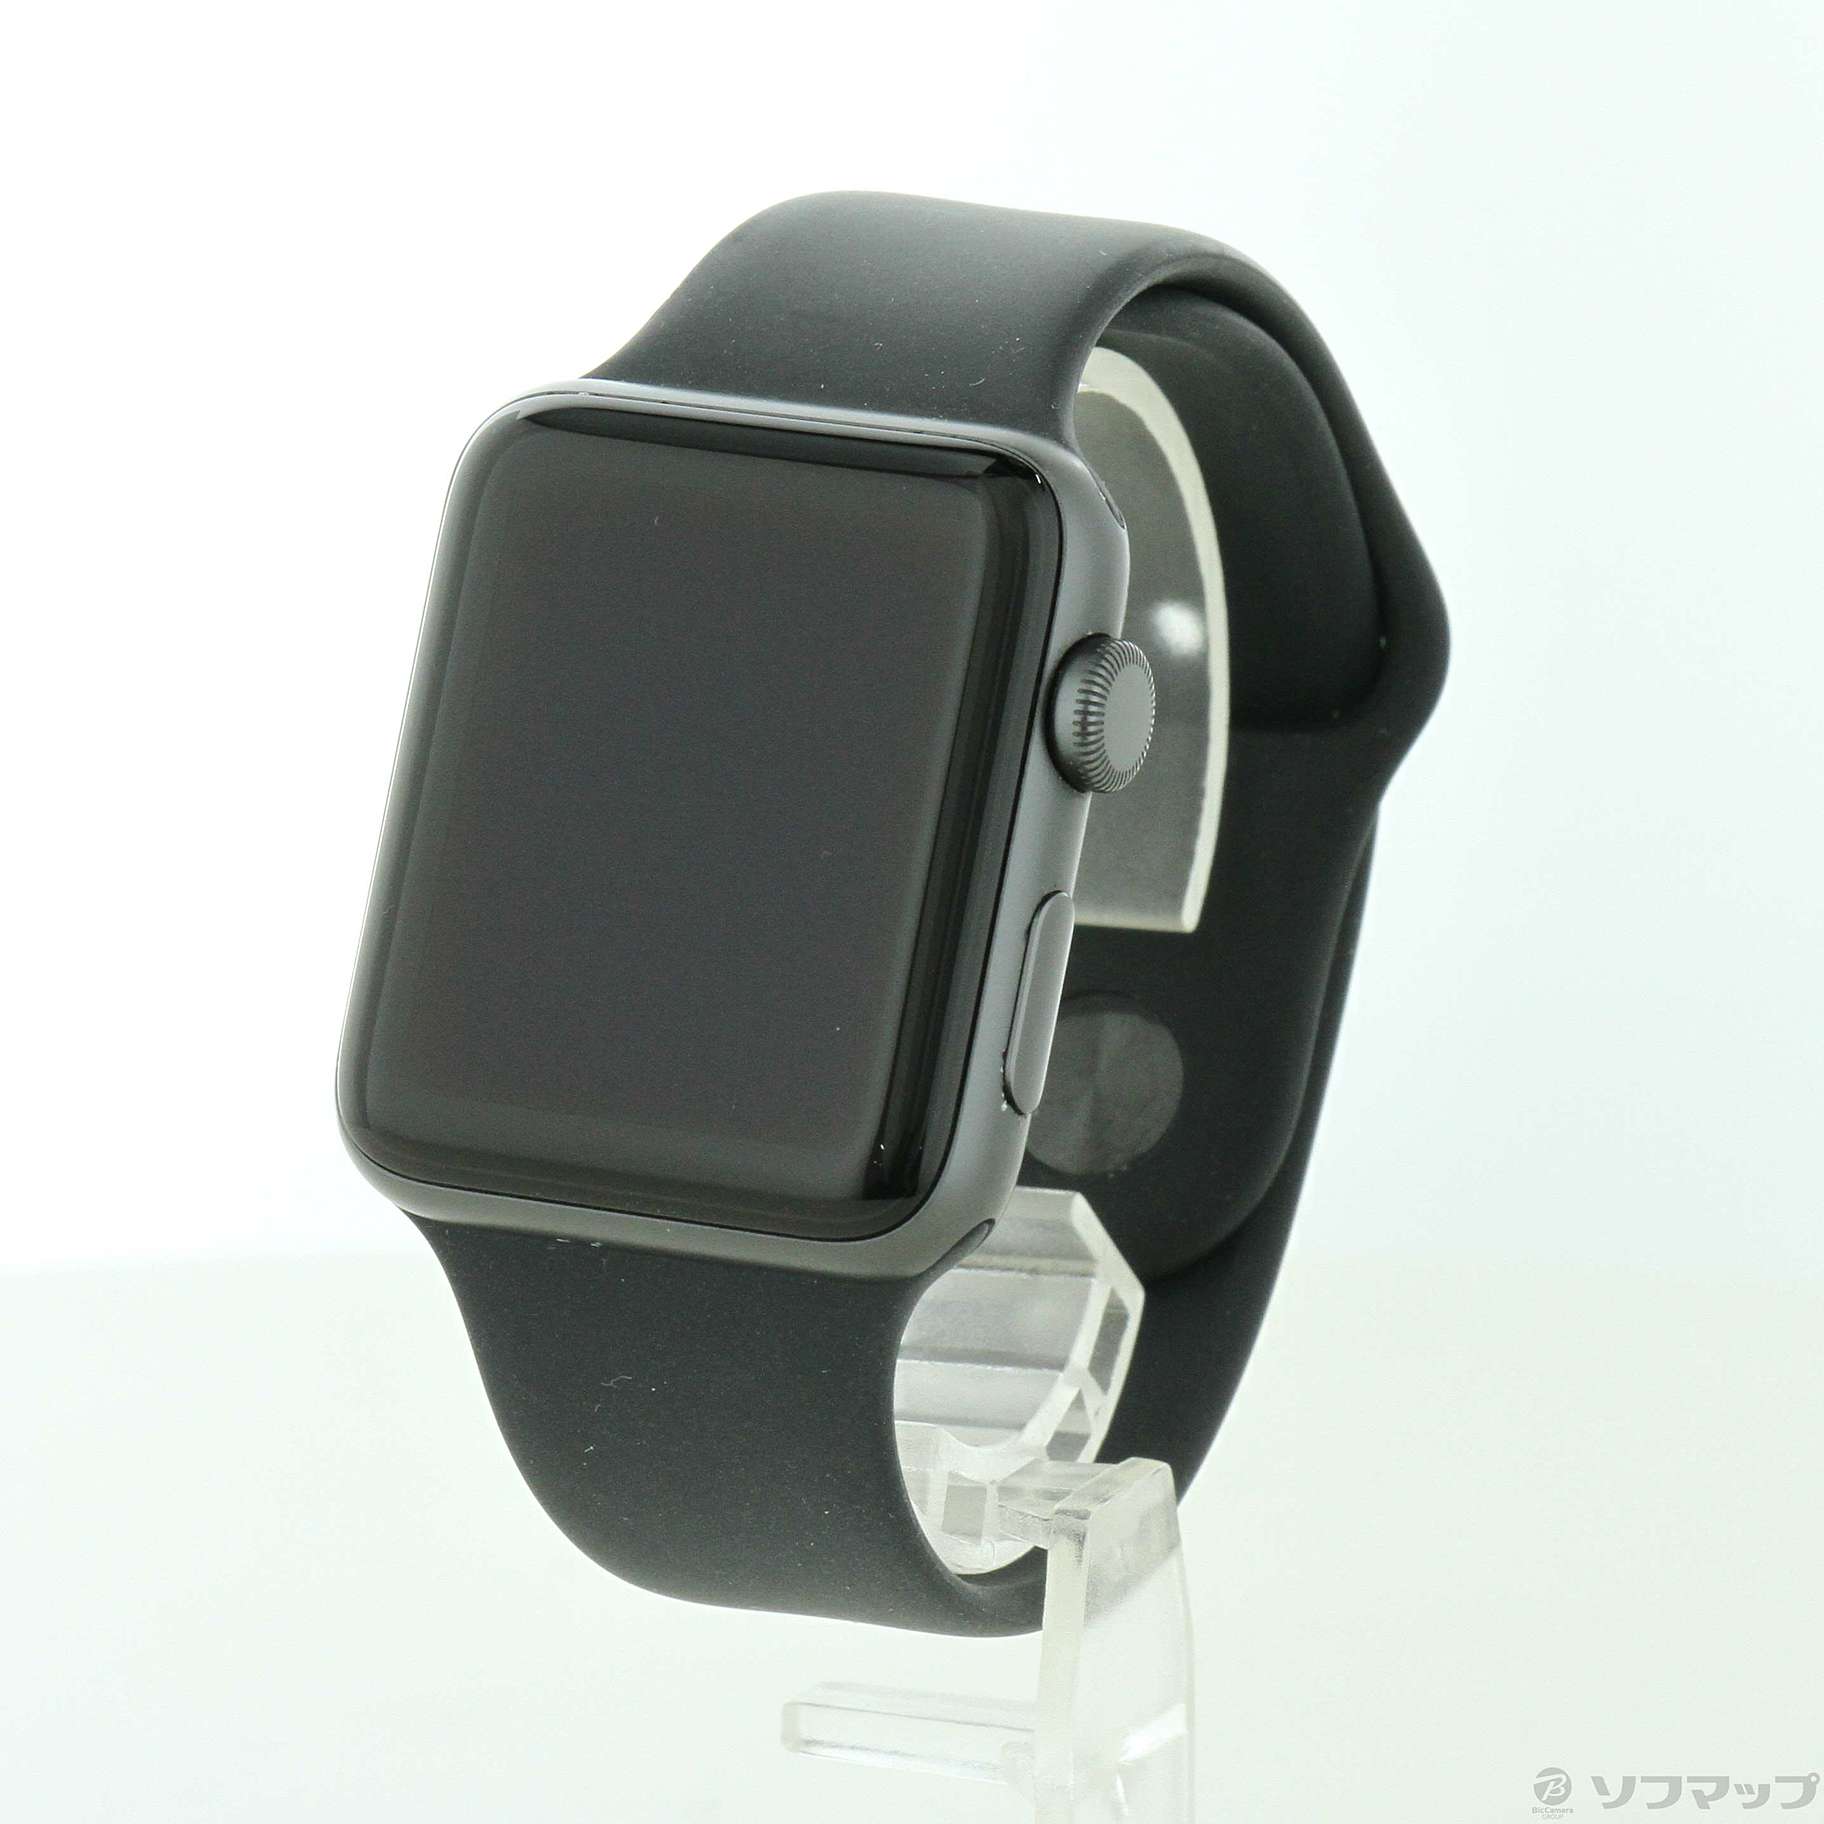 〔中古品〕 Apple Watch Series 3 GPS 42mm スペースグレイアルミニウムケース ブラックスポーツバンド